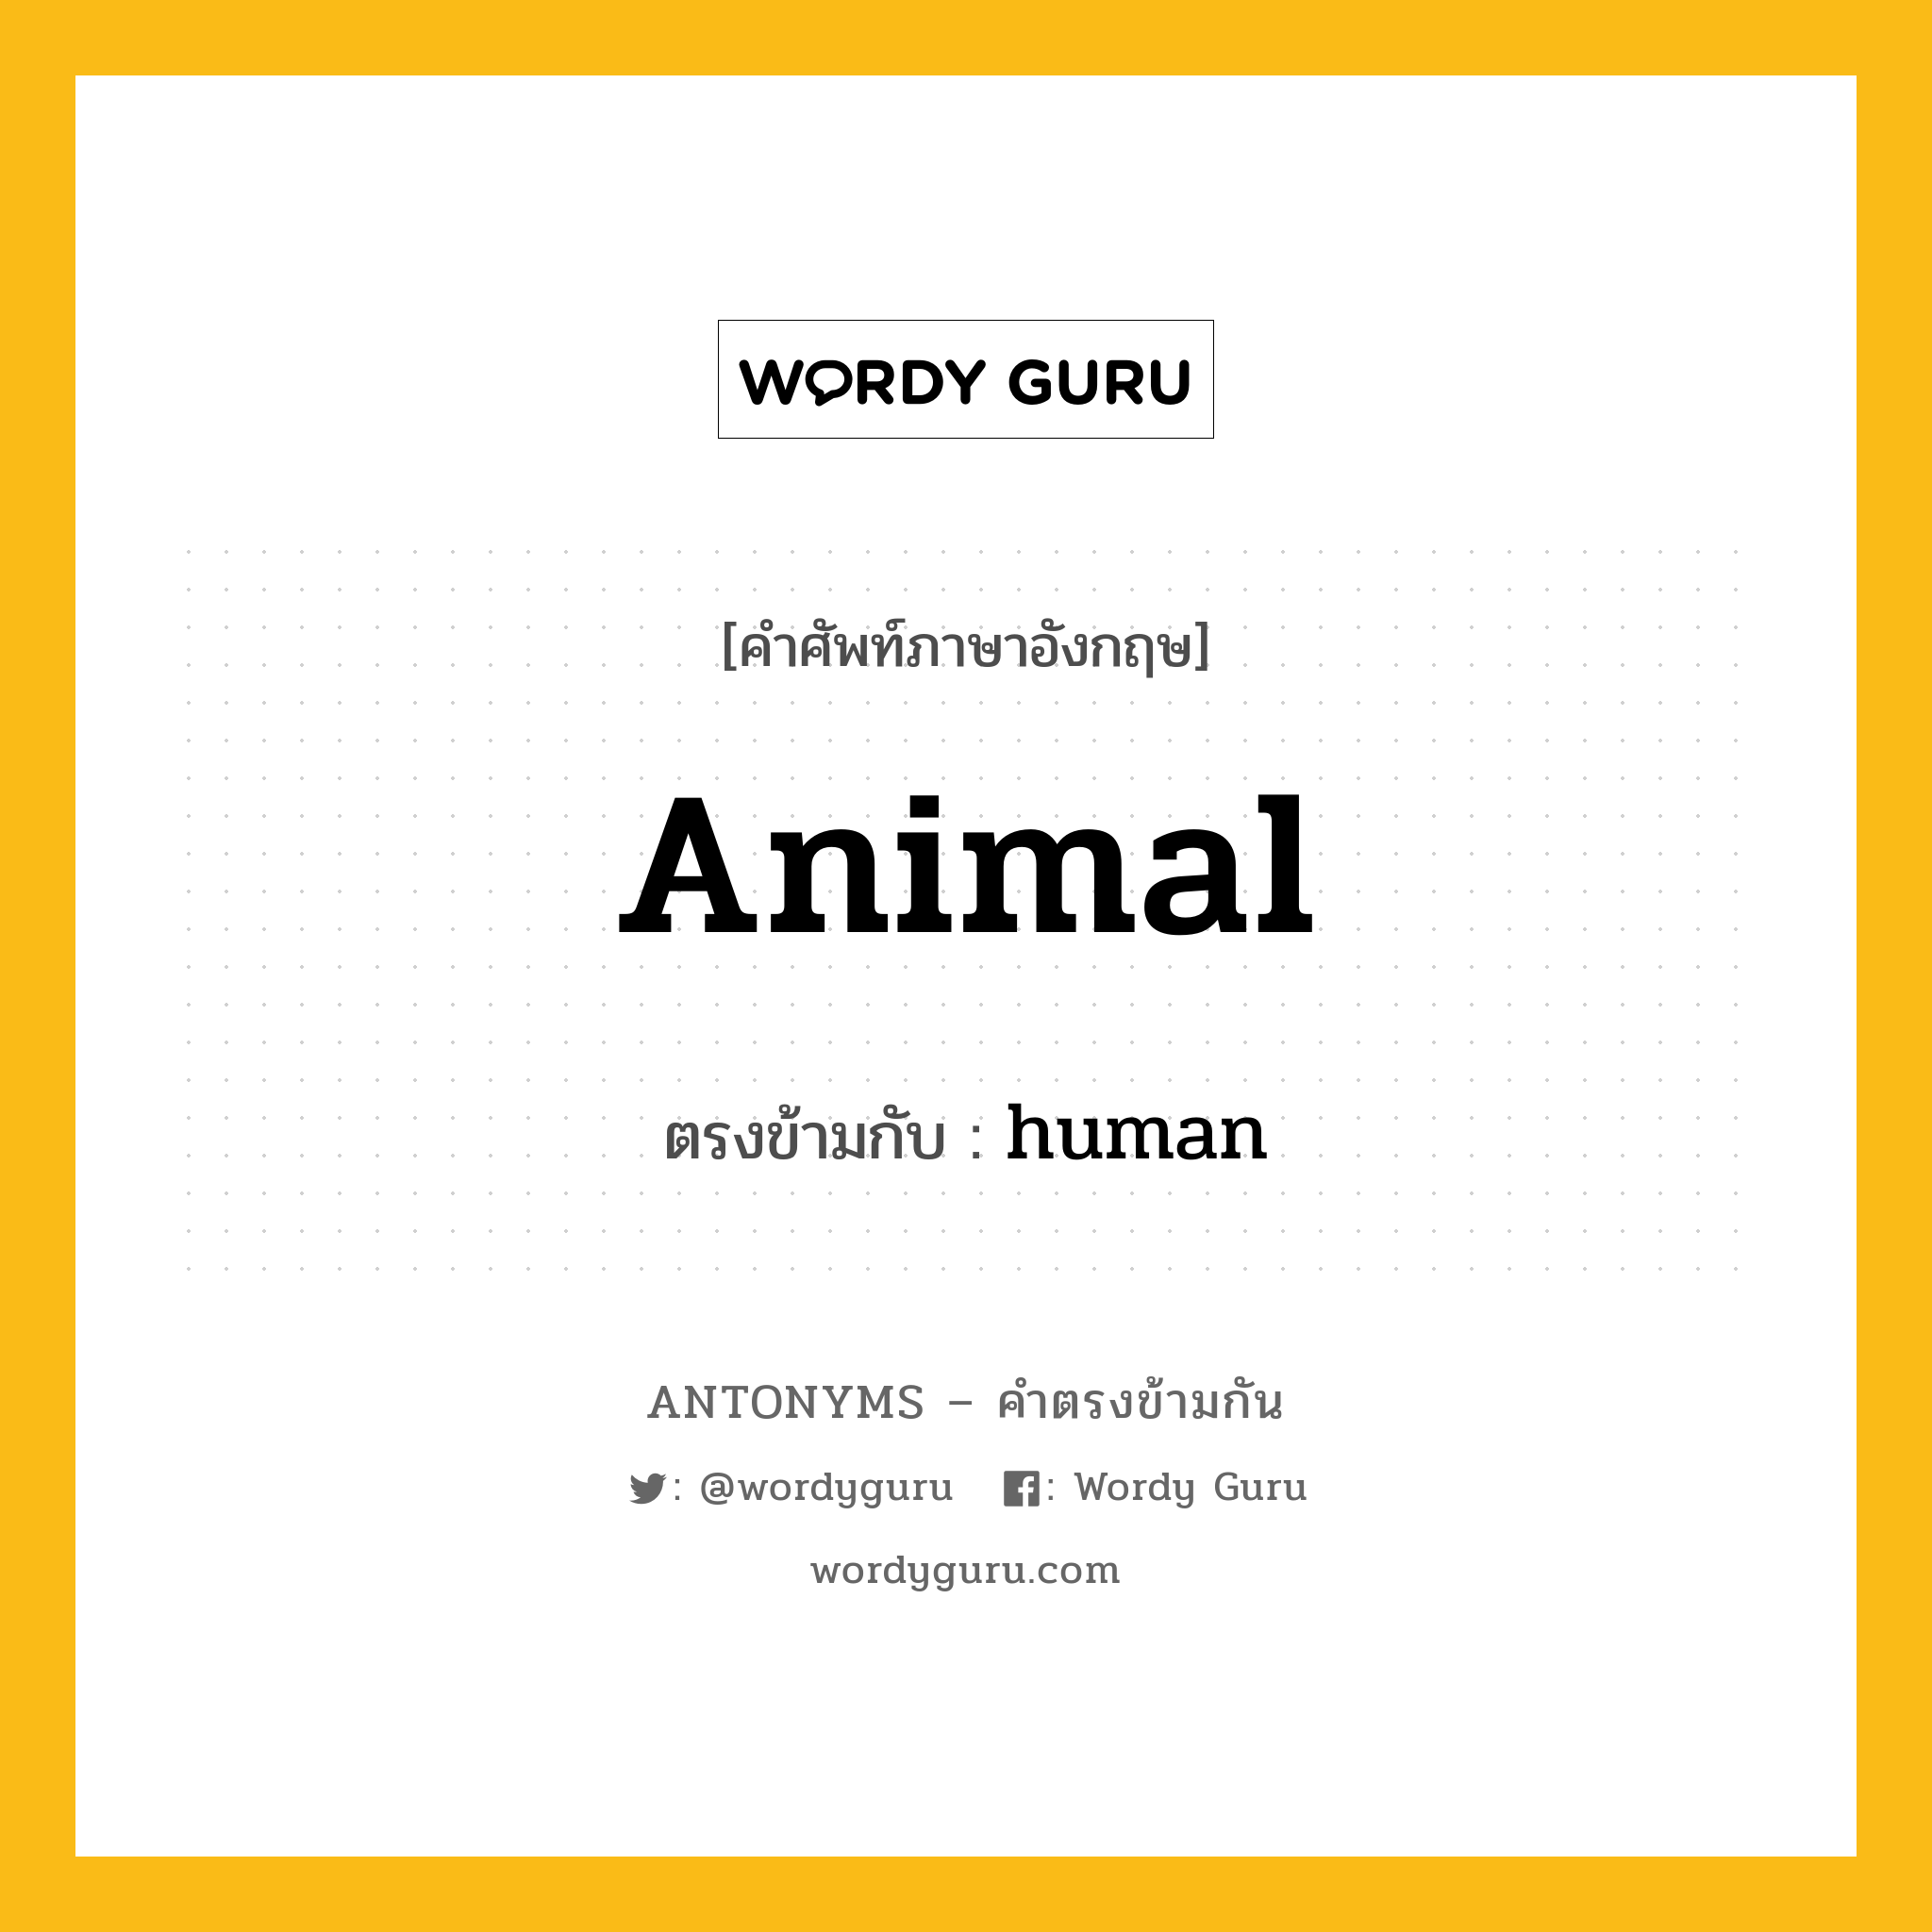 animal เป็นคำตรงข้ามกับคำไหนบ้าง?, คำศัพท์ภาษาอังกฤษ animal ตรงข้ามกับ human หมวด human